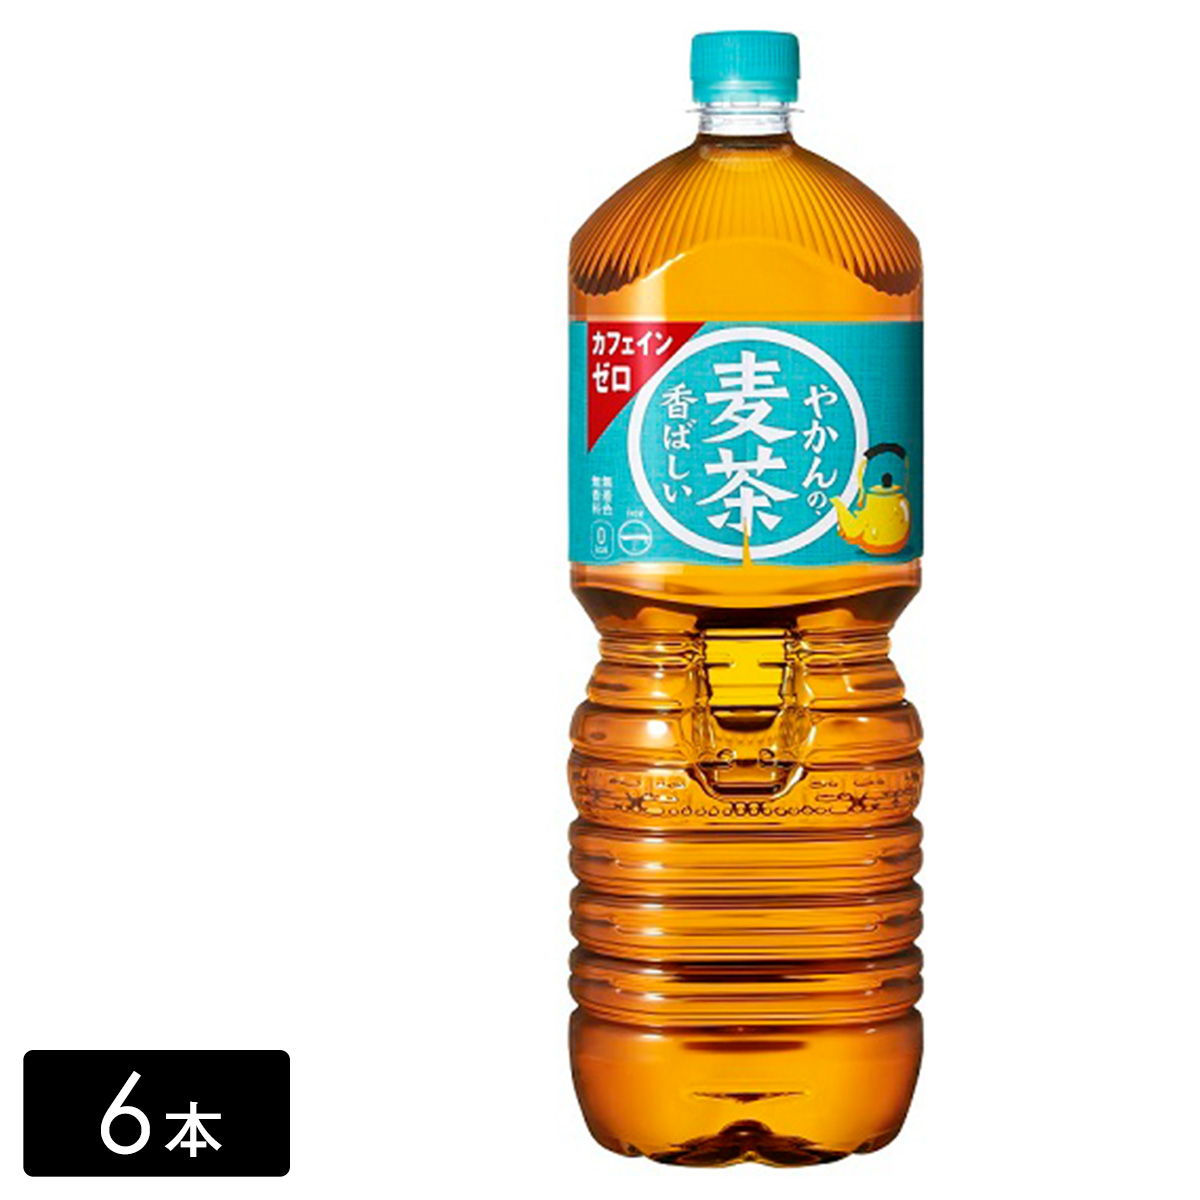 やかんの麦茶 from 一(はじめ) 2L×6本(1箱) ペットボトル ケース売り